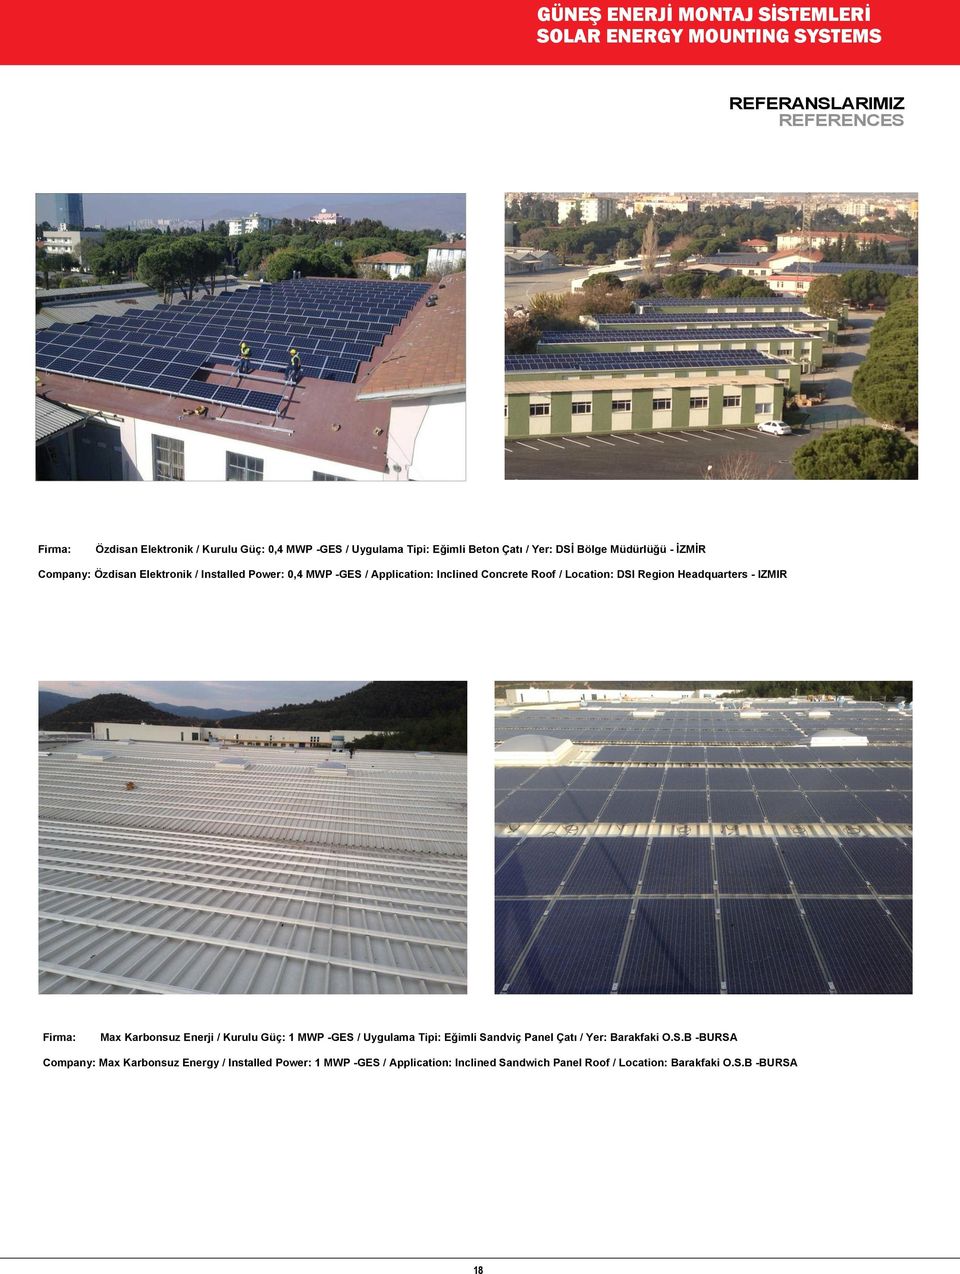 Roof / Location: DSI Region Headquarters - IZMIR Firma: Max Karbonsuz Enerji / Kurulu Güç: 1 MWP -GES / Uygulama Tipi: Eğimli Sandviç Panel Çatı / Yer: